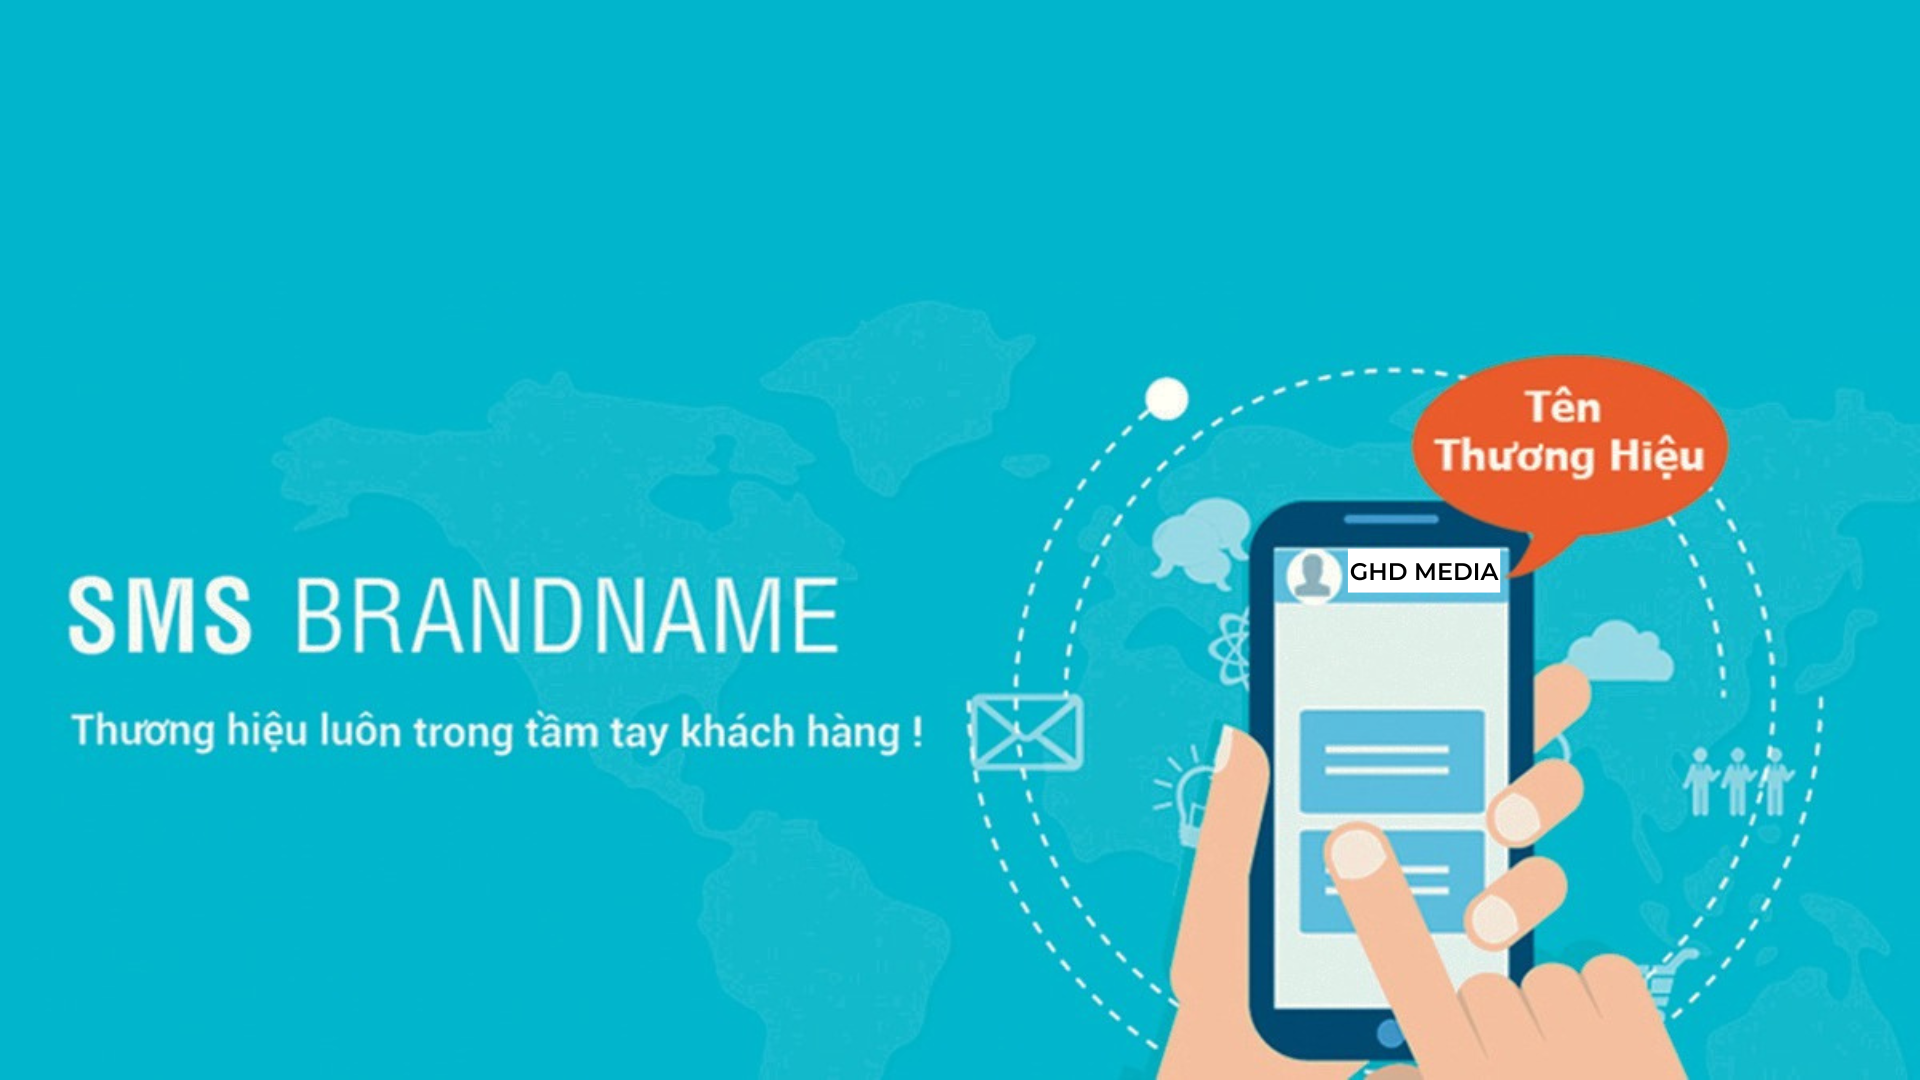 06 cách để tối ưu chiến dịch SMS Brandname hiệu quả mà bạn không nên bỏ lỡ